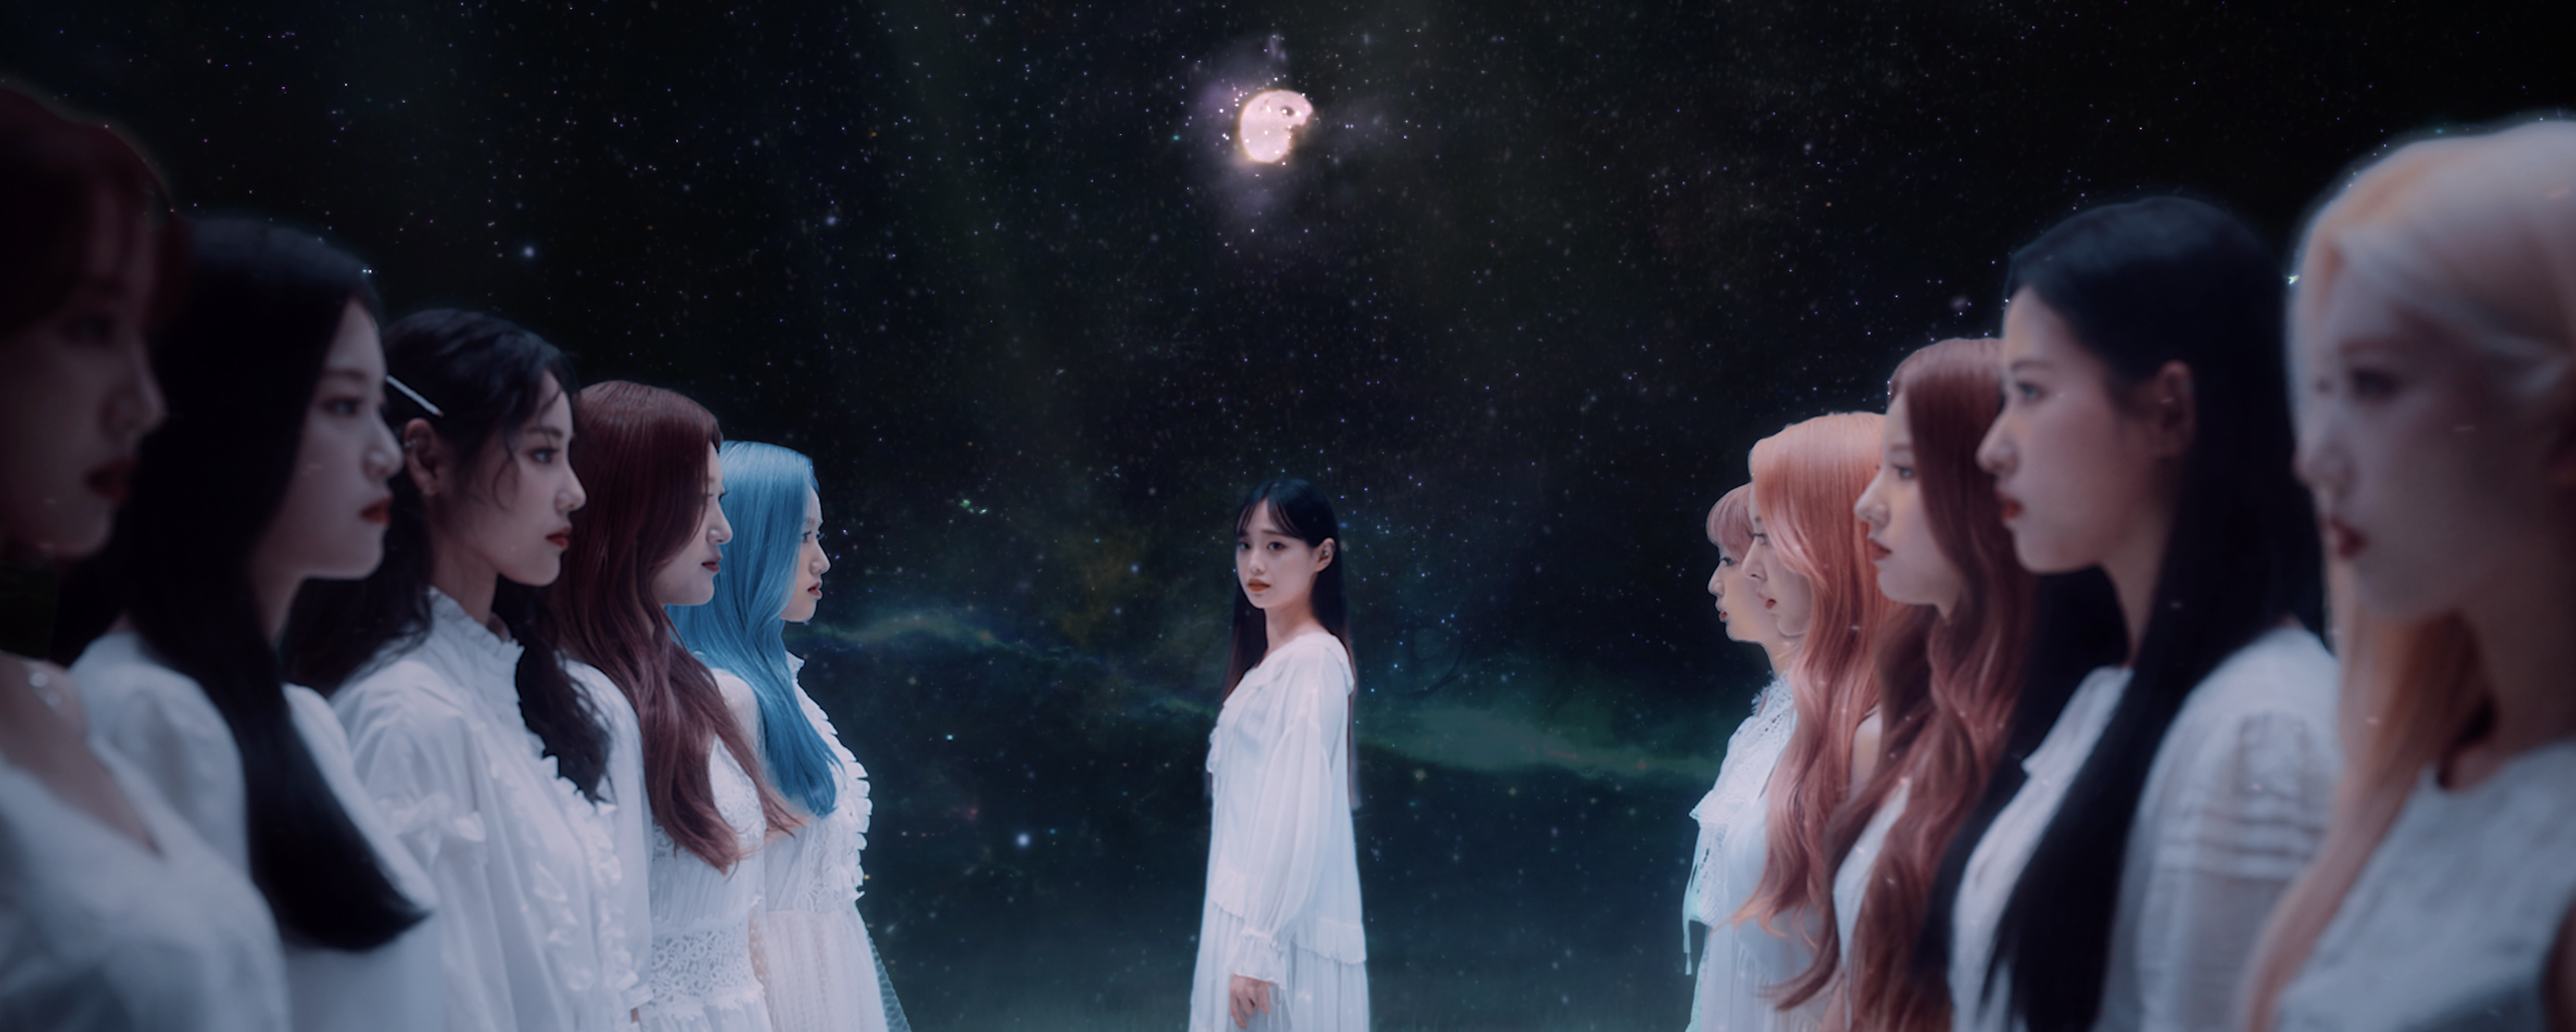 [이달의 소녀] 이달의 소녀 (LOOΠΔ) "Star" MV